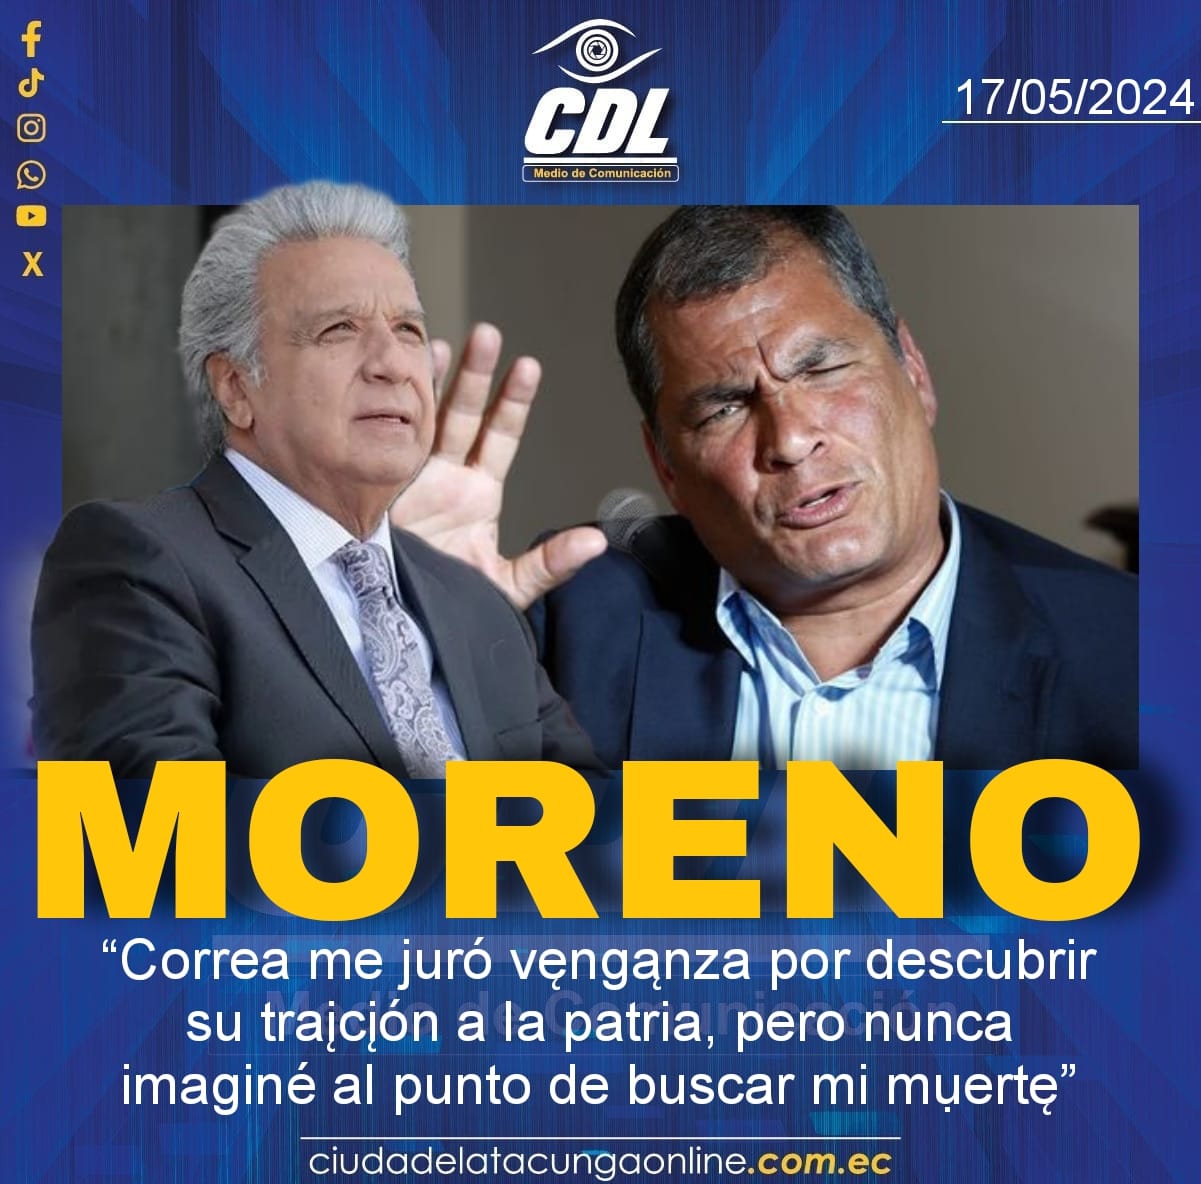 Lenín Moreno: “Correa me juró vęngąnza por descubrir su trąįción a la patria, pero nunca imaginé al punto de buscar mi mụęrte”